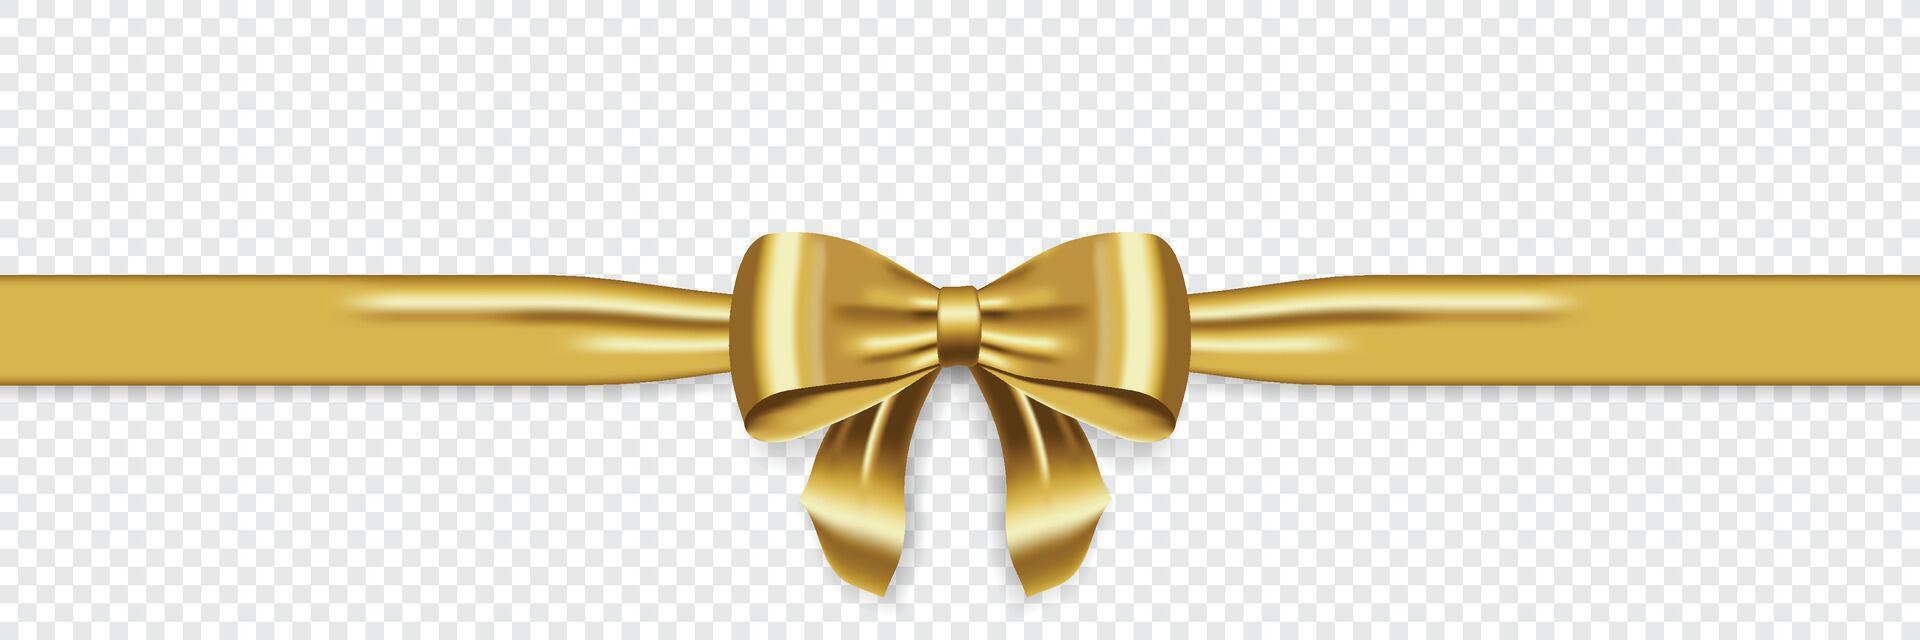 satín decorativo dorado arco con horizontal amarillo cinta. realista oro arco para decoración diseño. elemento para decoración regalos, saludos, Días festivos vector